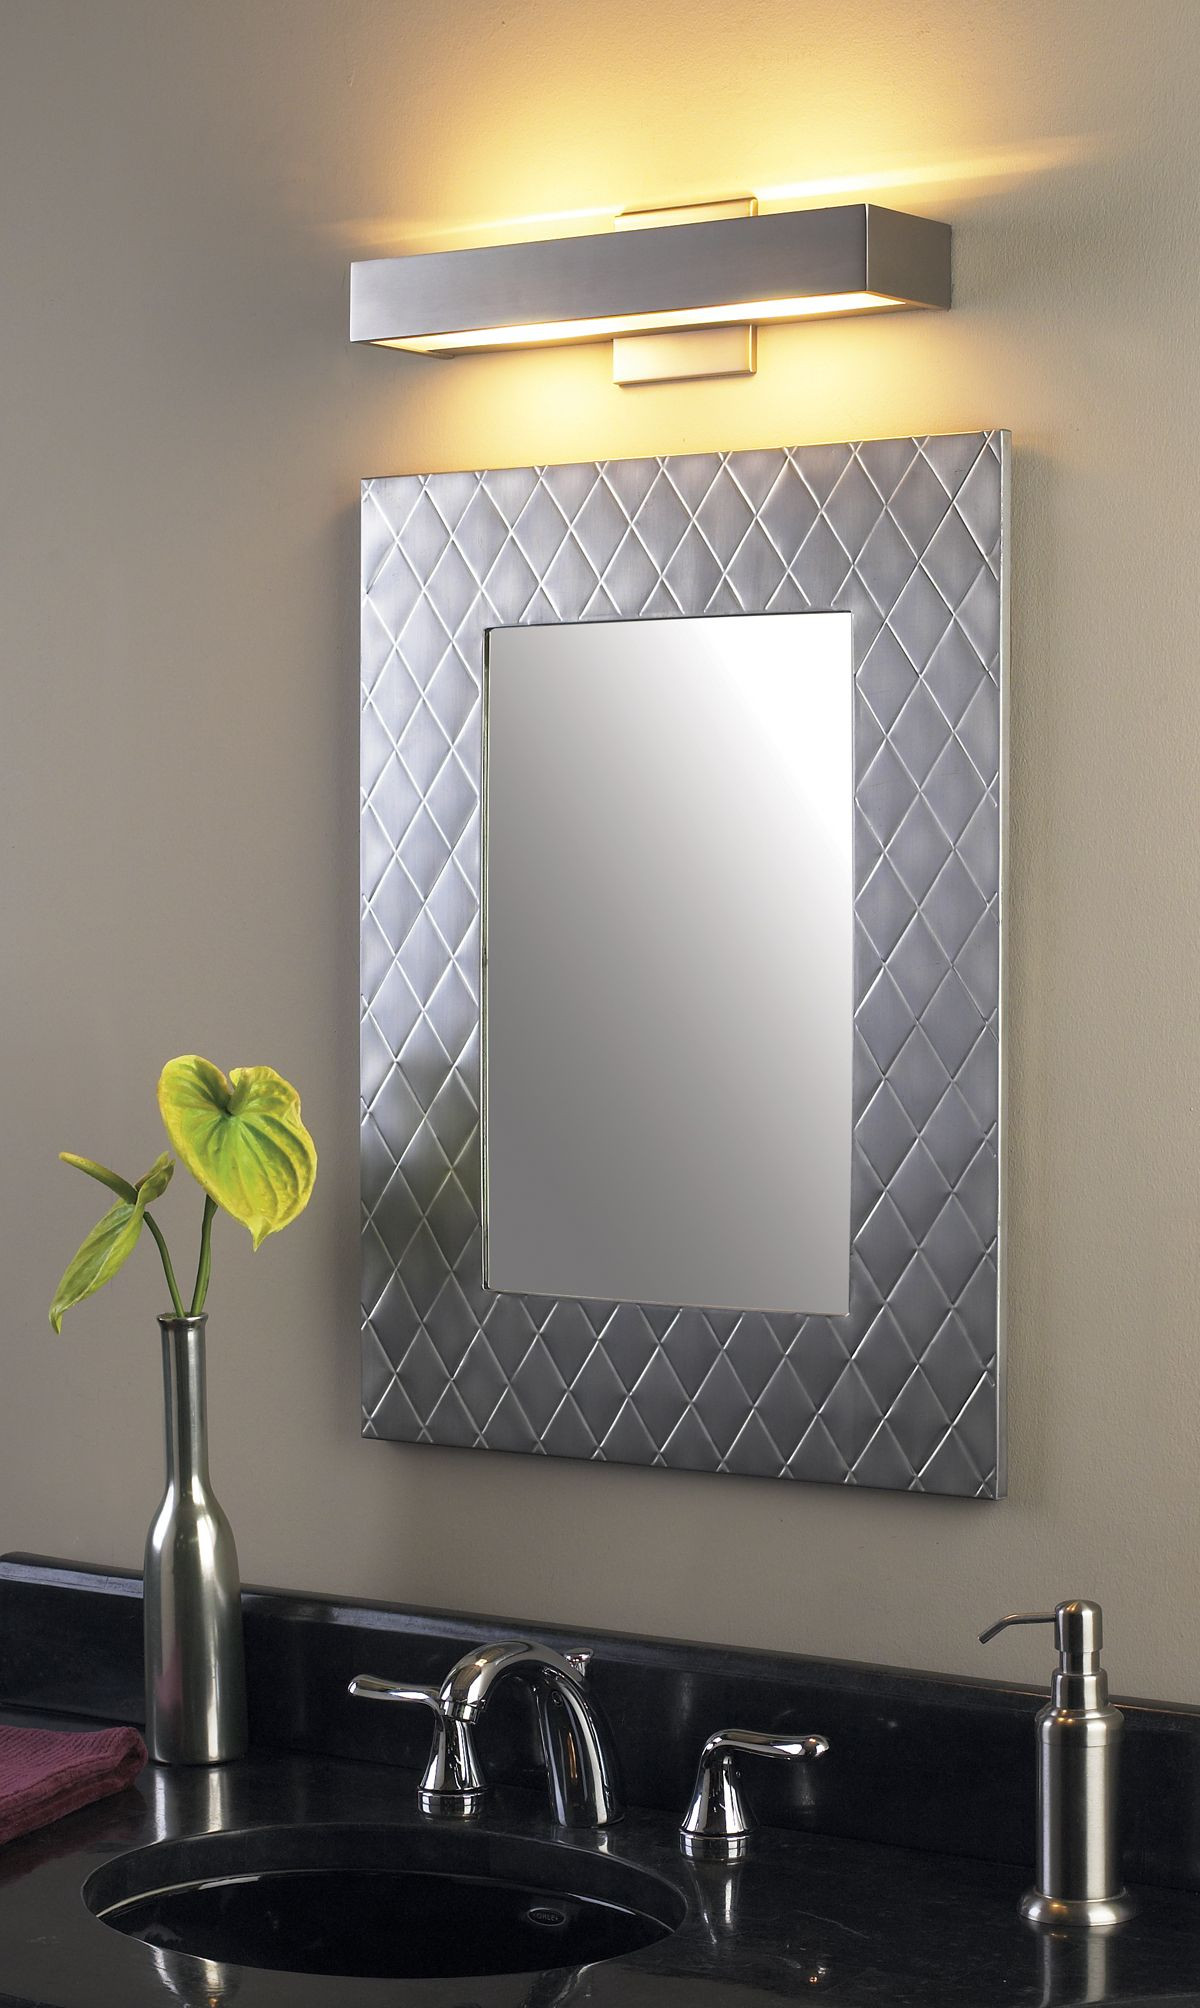 Bathroom Vanity Mirror With Lights
 Bathroom Vanity Lighting Covered in Maximum Aesthetic